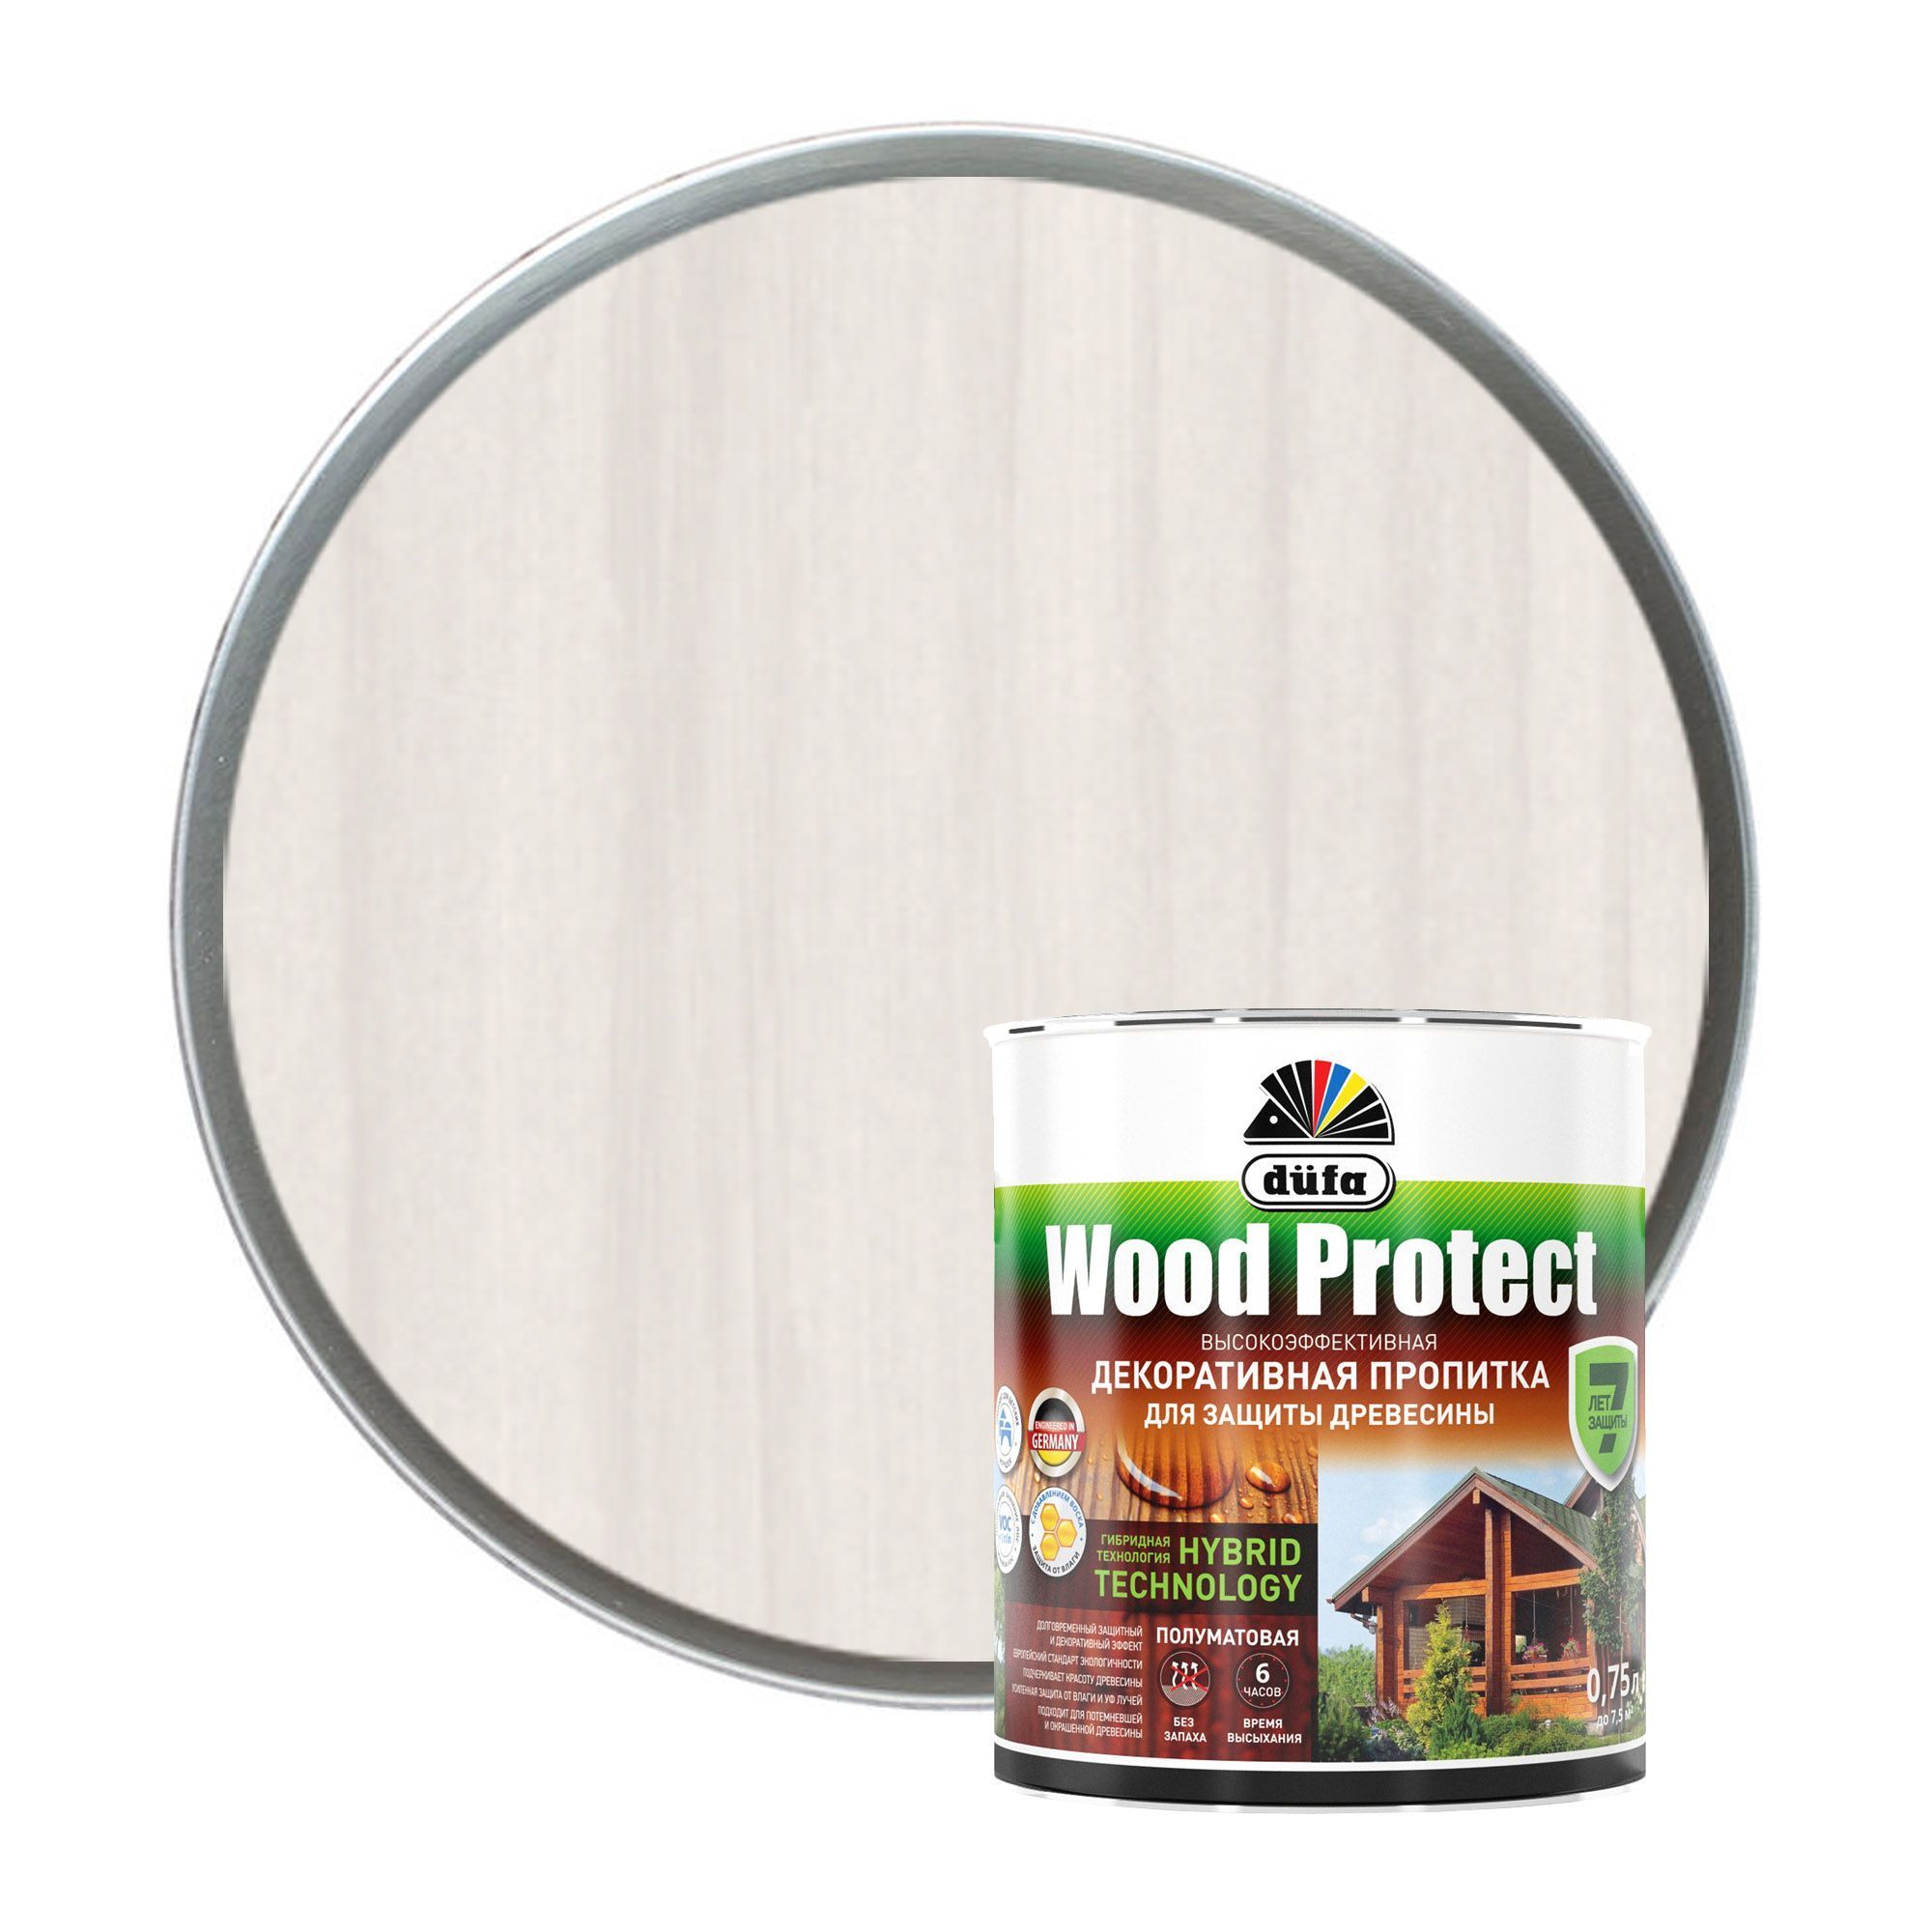 Пропитка Dufa Wood protect